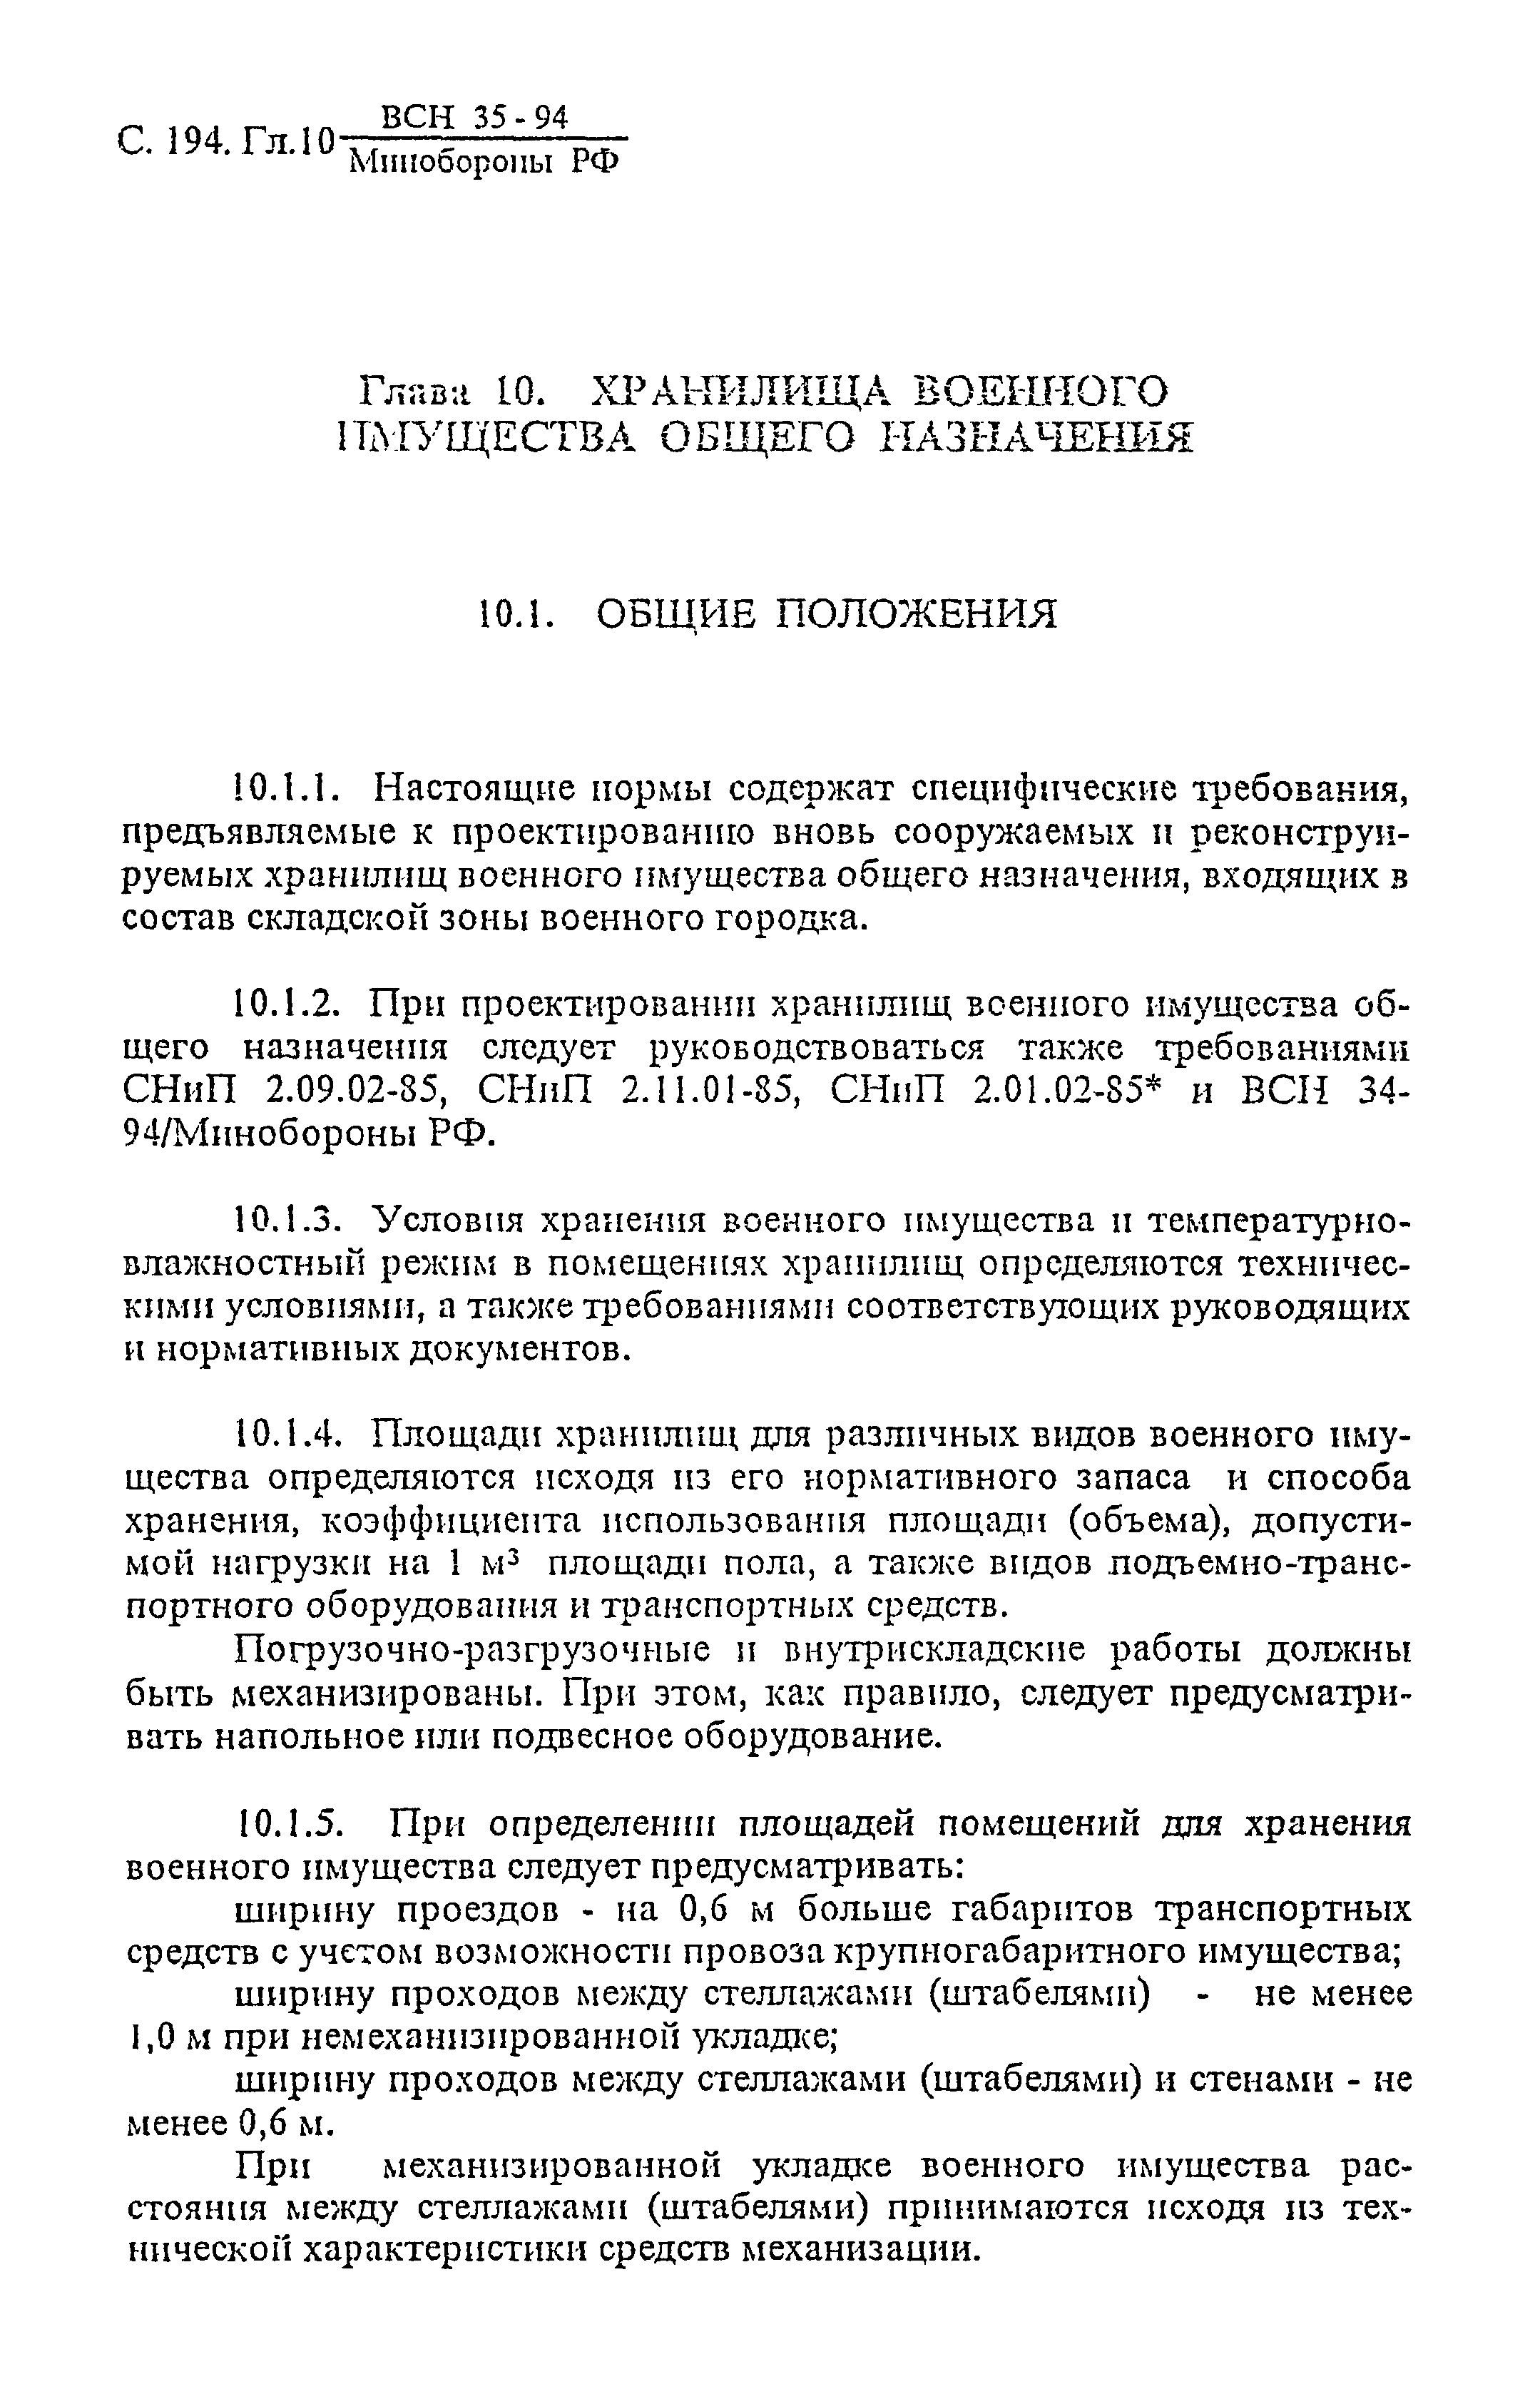 ВСН 35-94 МО РФ